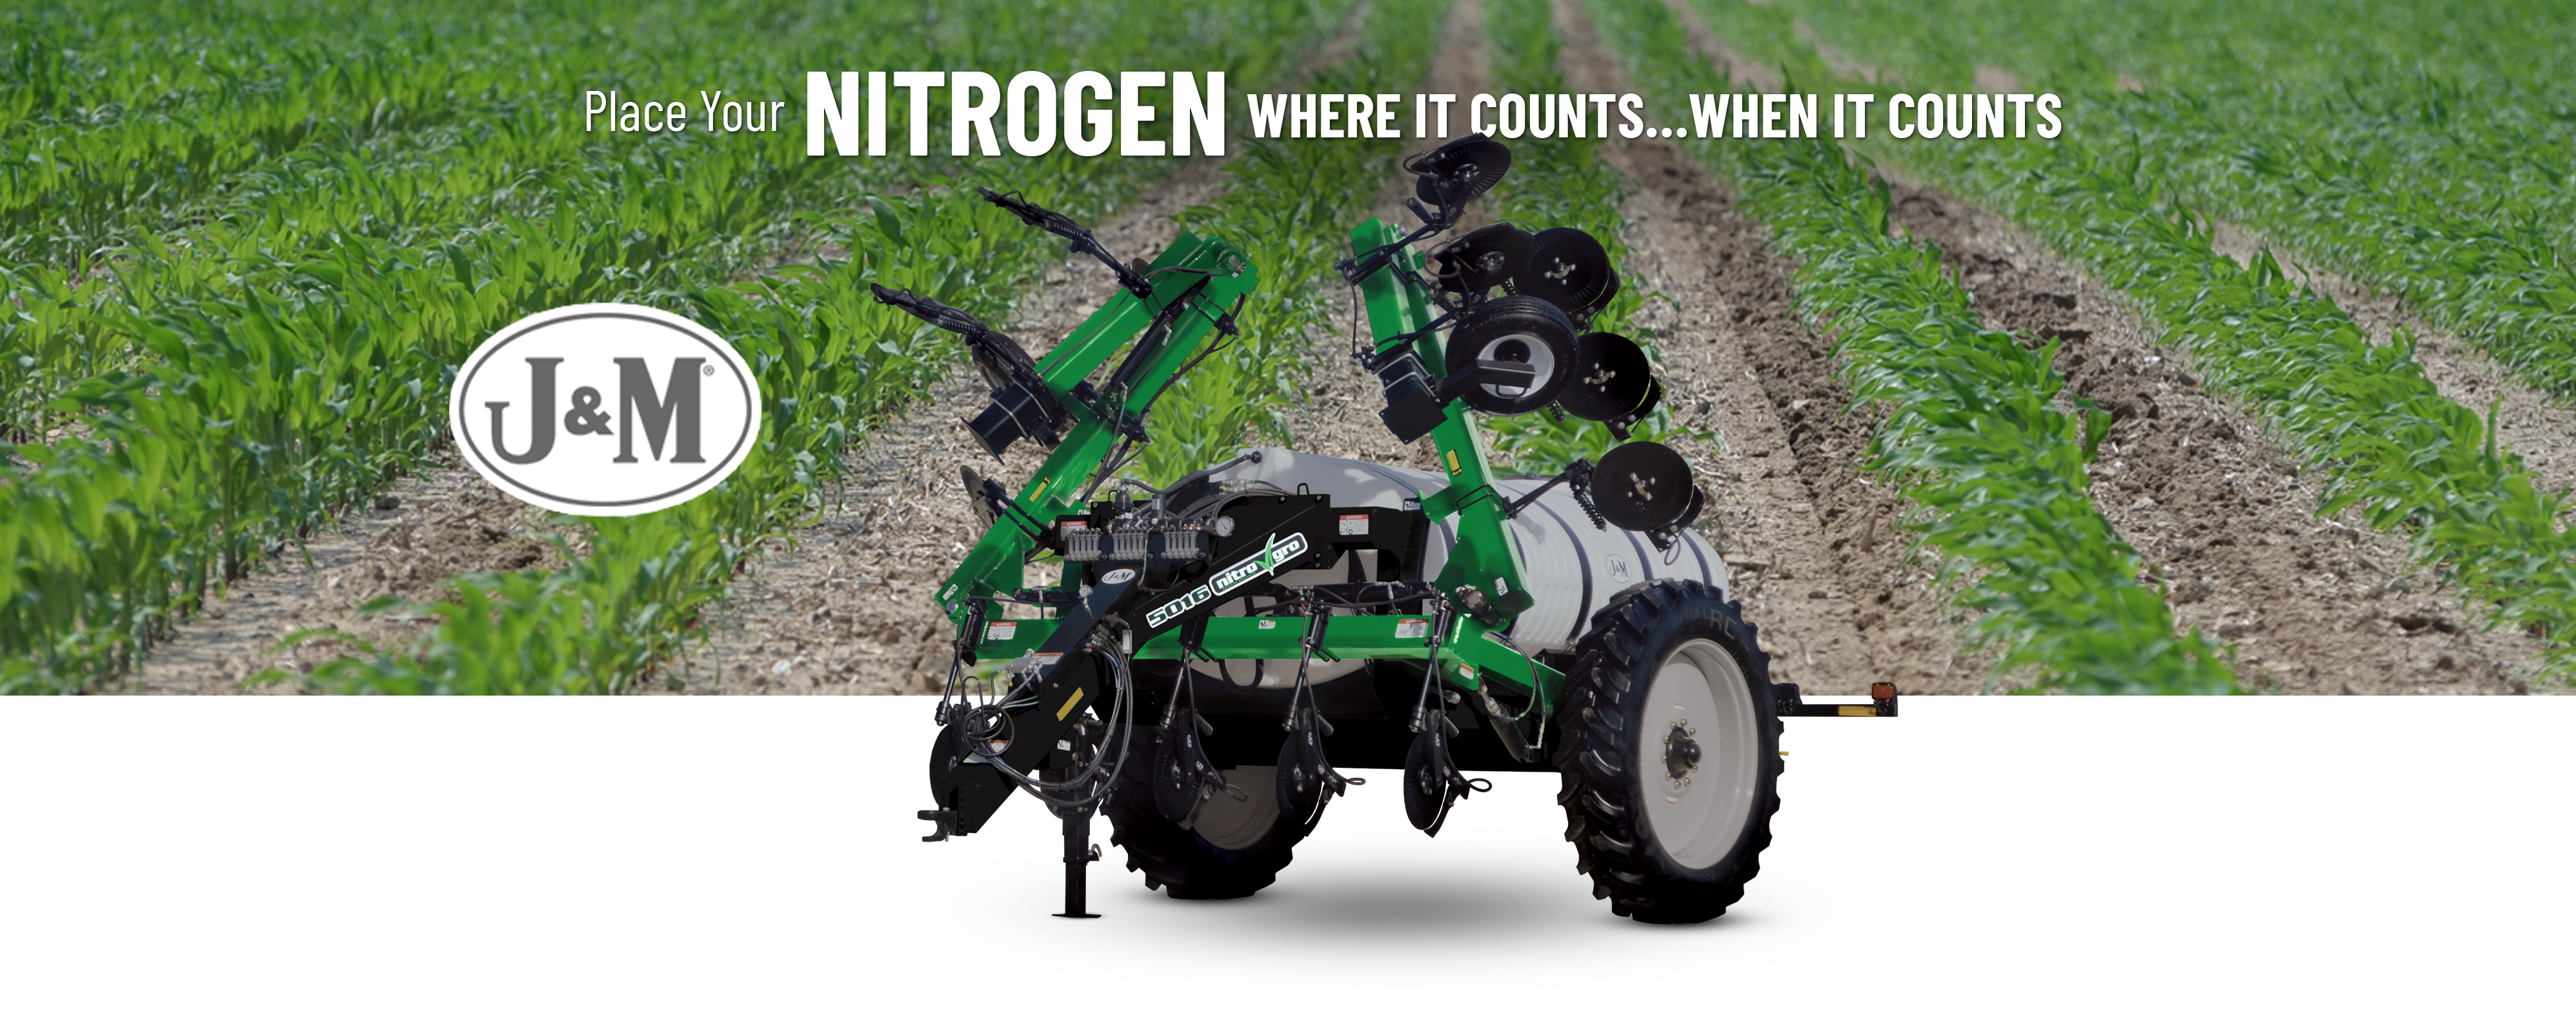 NitroGro 5016 Nitrogen Applicator in front of field